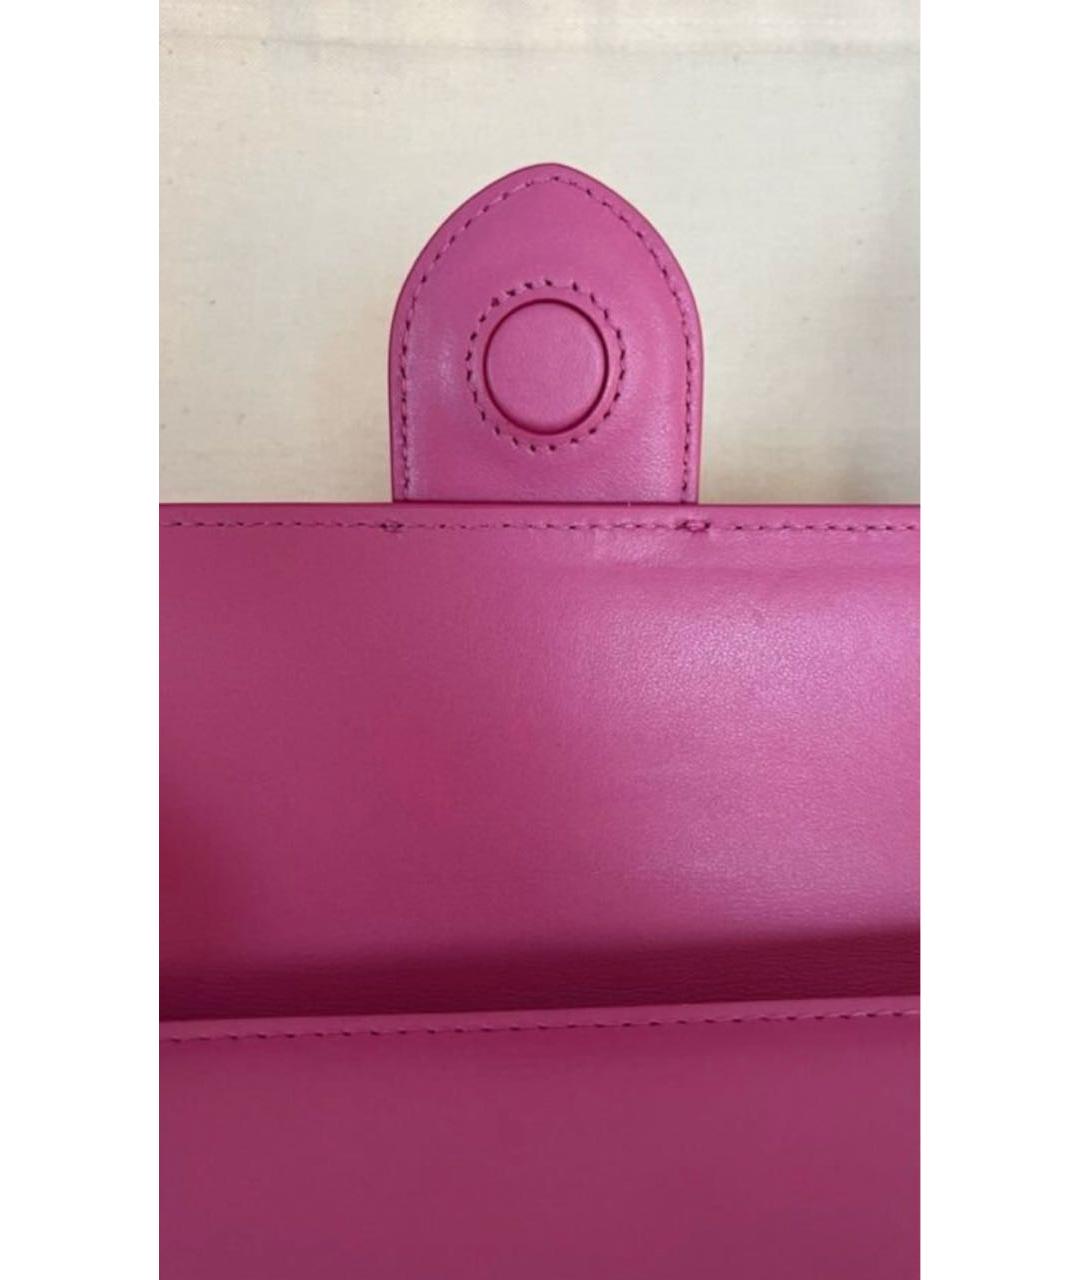 JACQUEMUS Розовая кожаная сумка с короткими ручками, фото 8